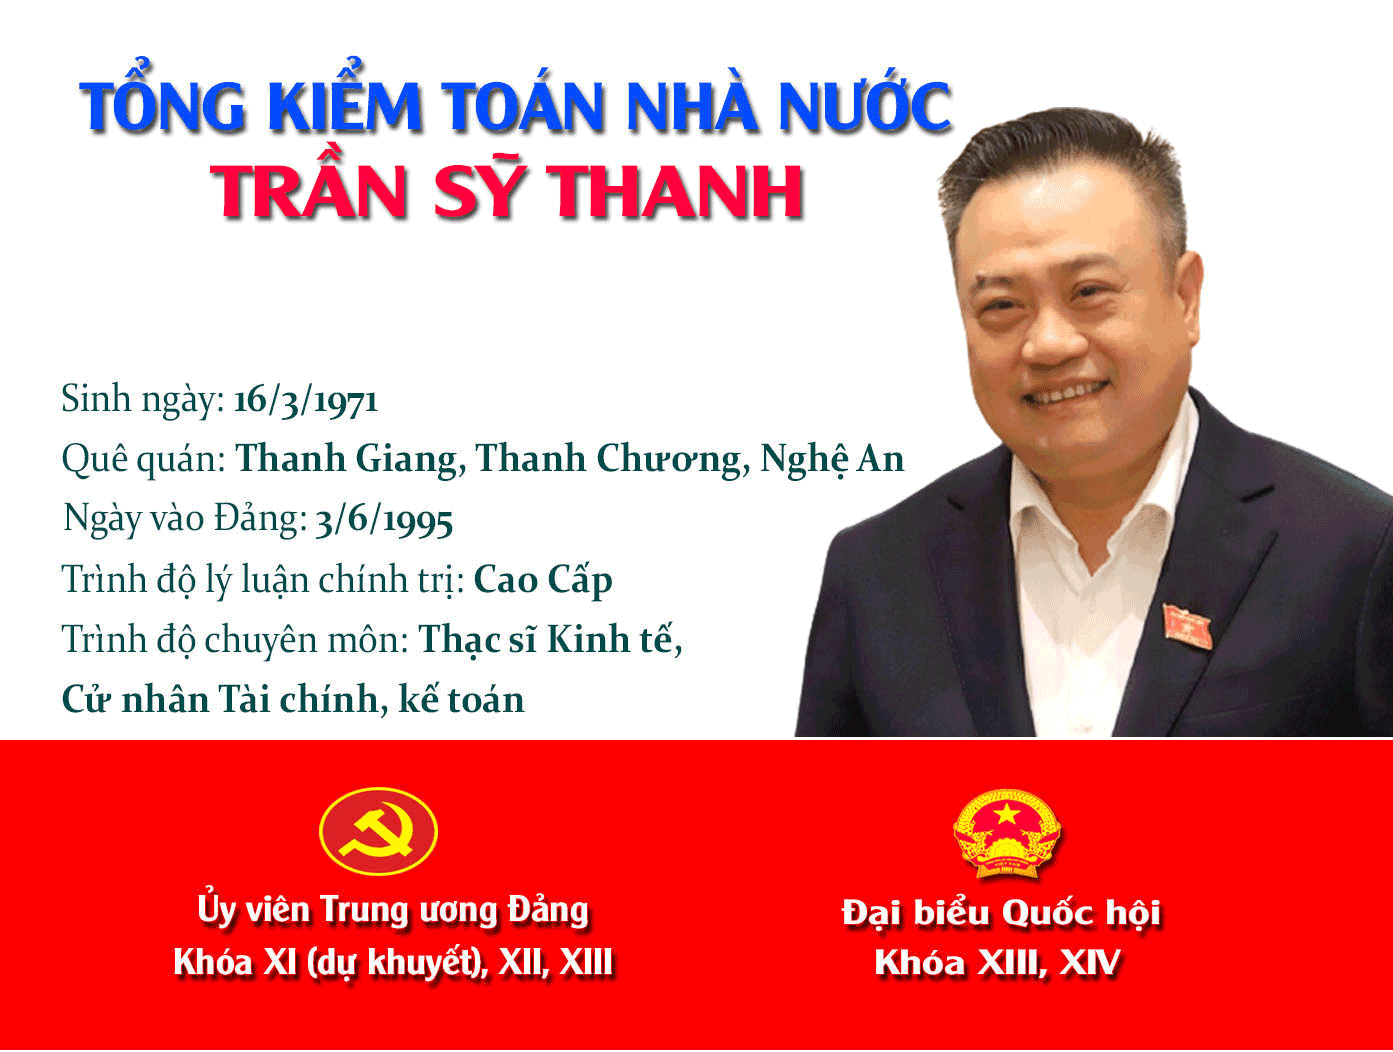 [Infographic]: Chân dung tân Tổng Kiểm toán Nhà nước Trần Sỹ Thanh